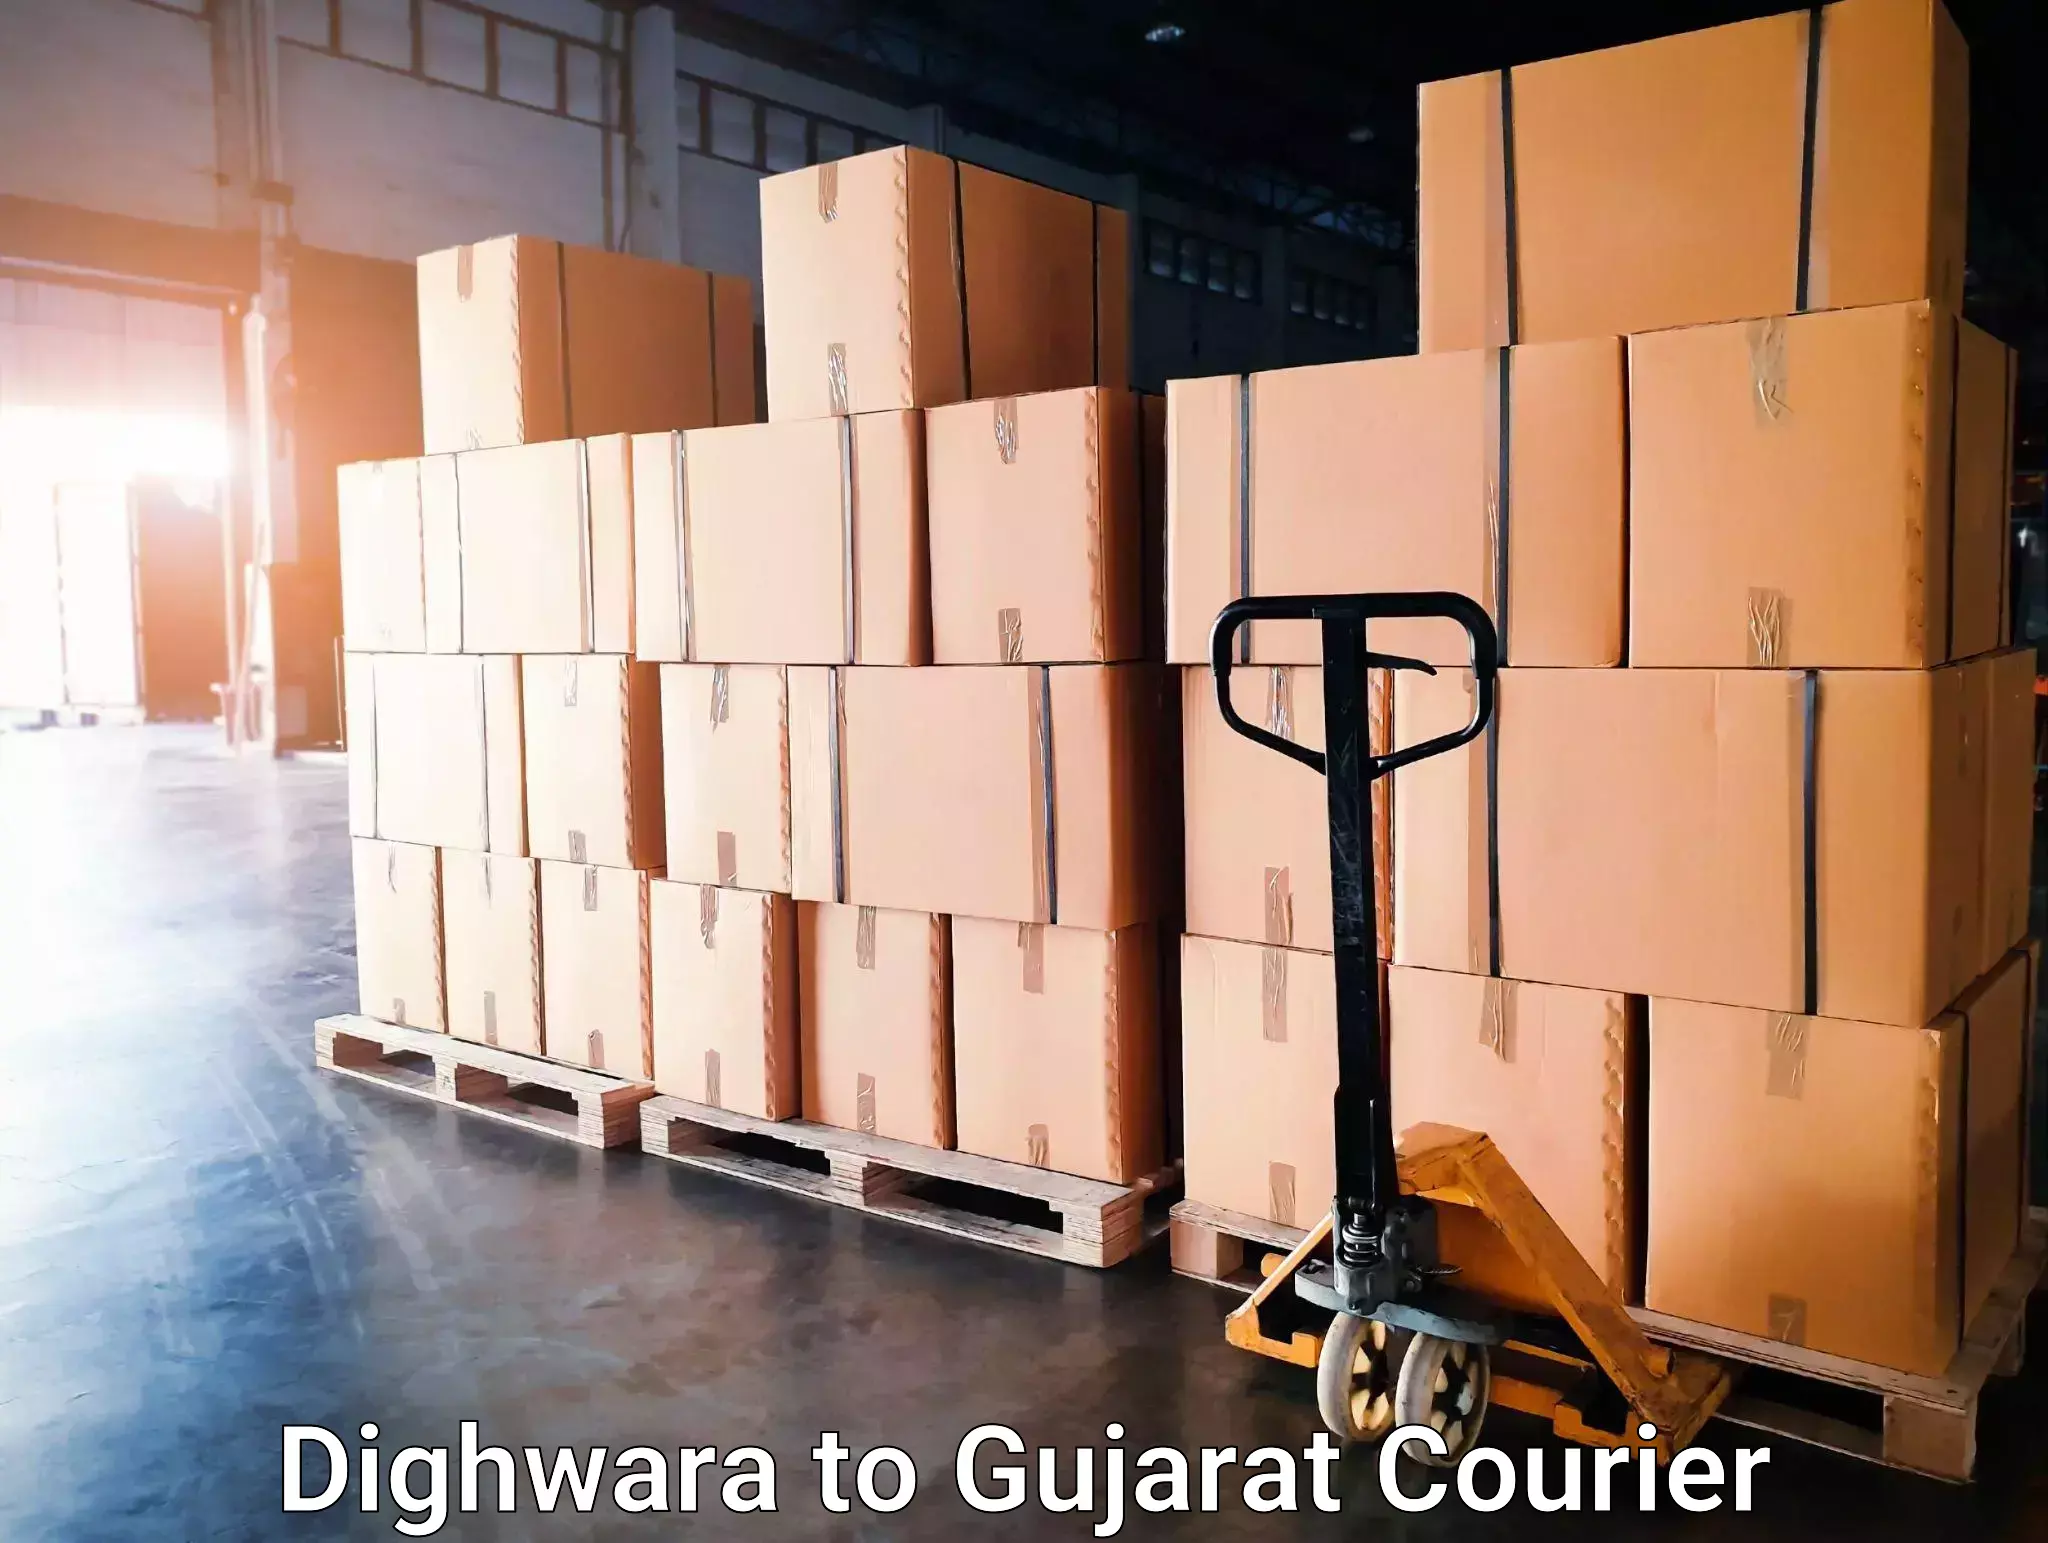 Furniture moving experts Dighwara to Gujarat